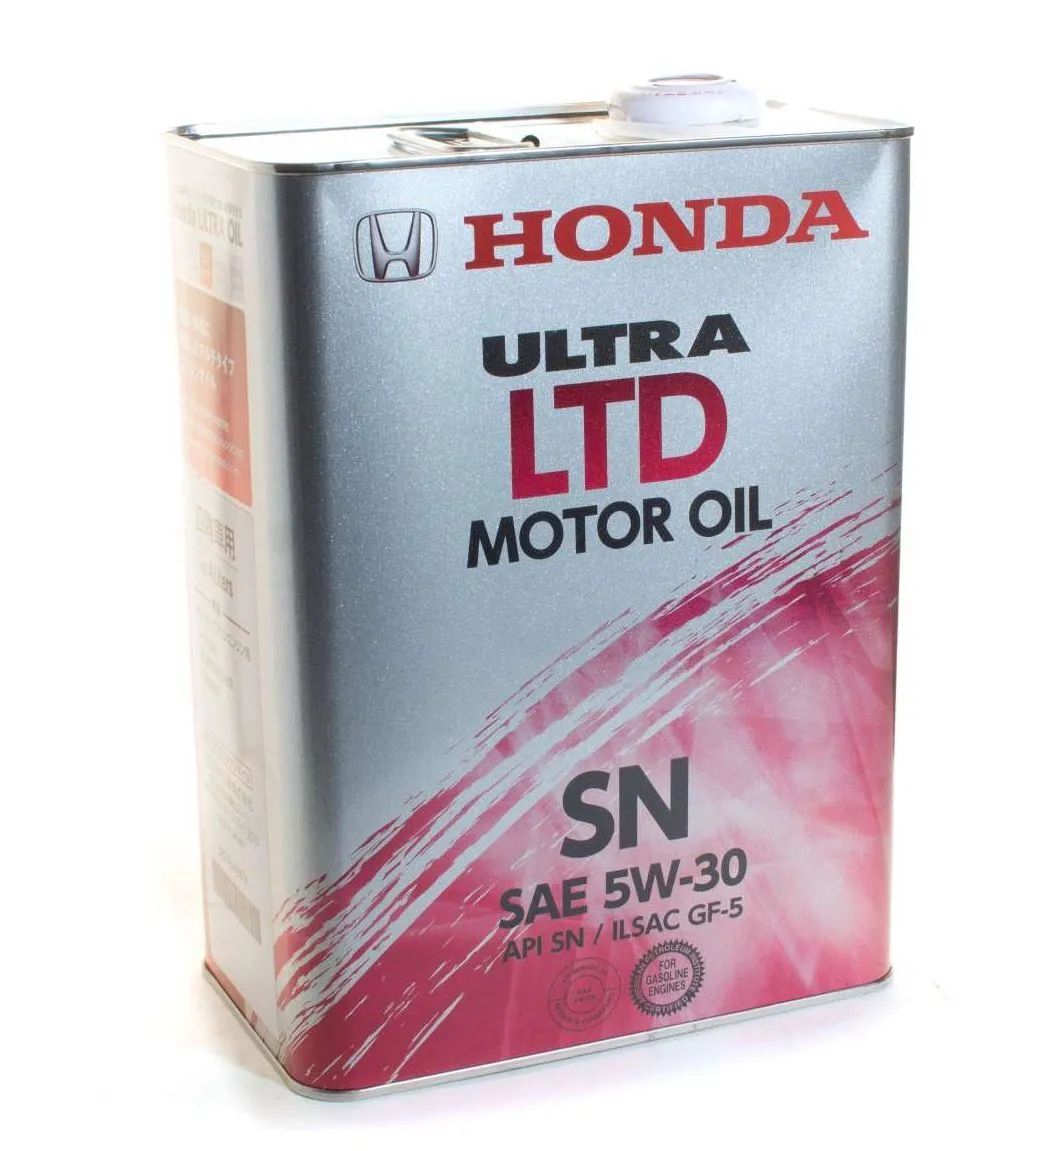 Мотор масло honda. Honda Ultra Ltd 5w30 SN. Honda Ultra Ltd SAE 5w-30. Honda Ultra Ltd SN/gf 5w-30 1л. Моторное масло 5w30 Хонда оригинал.